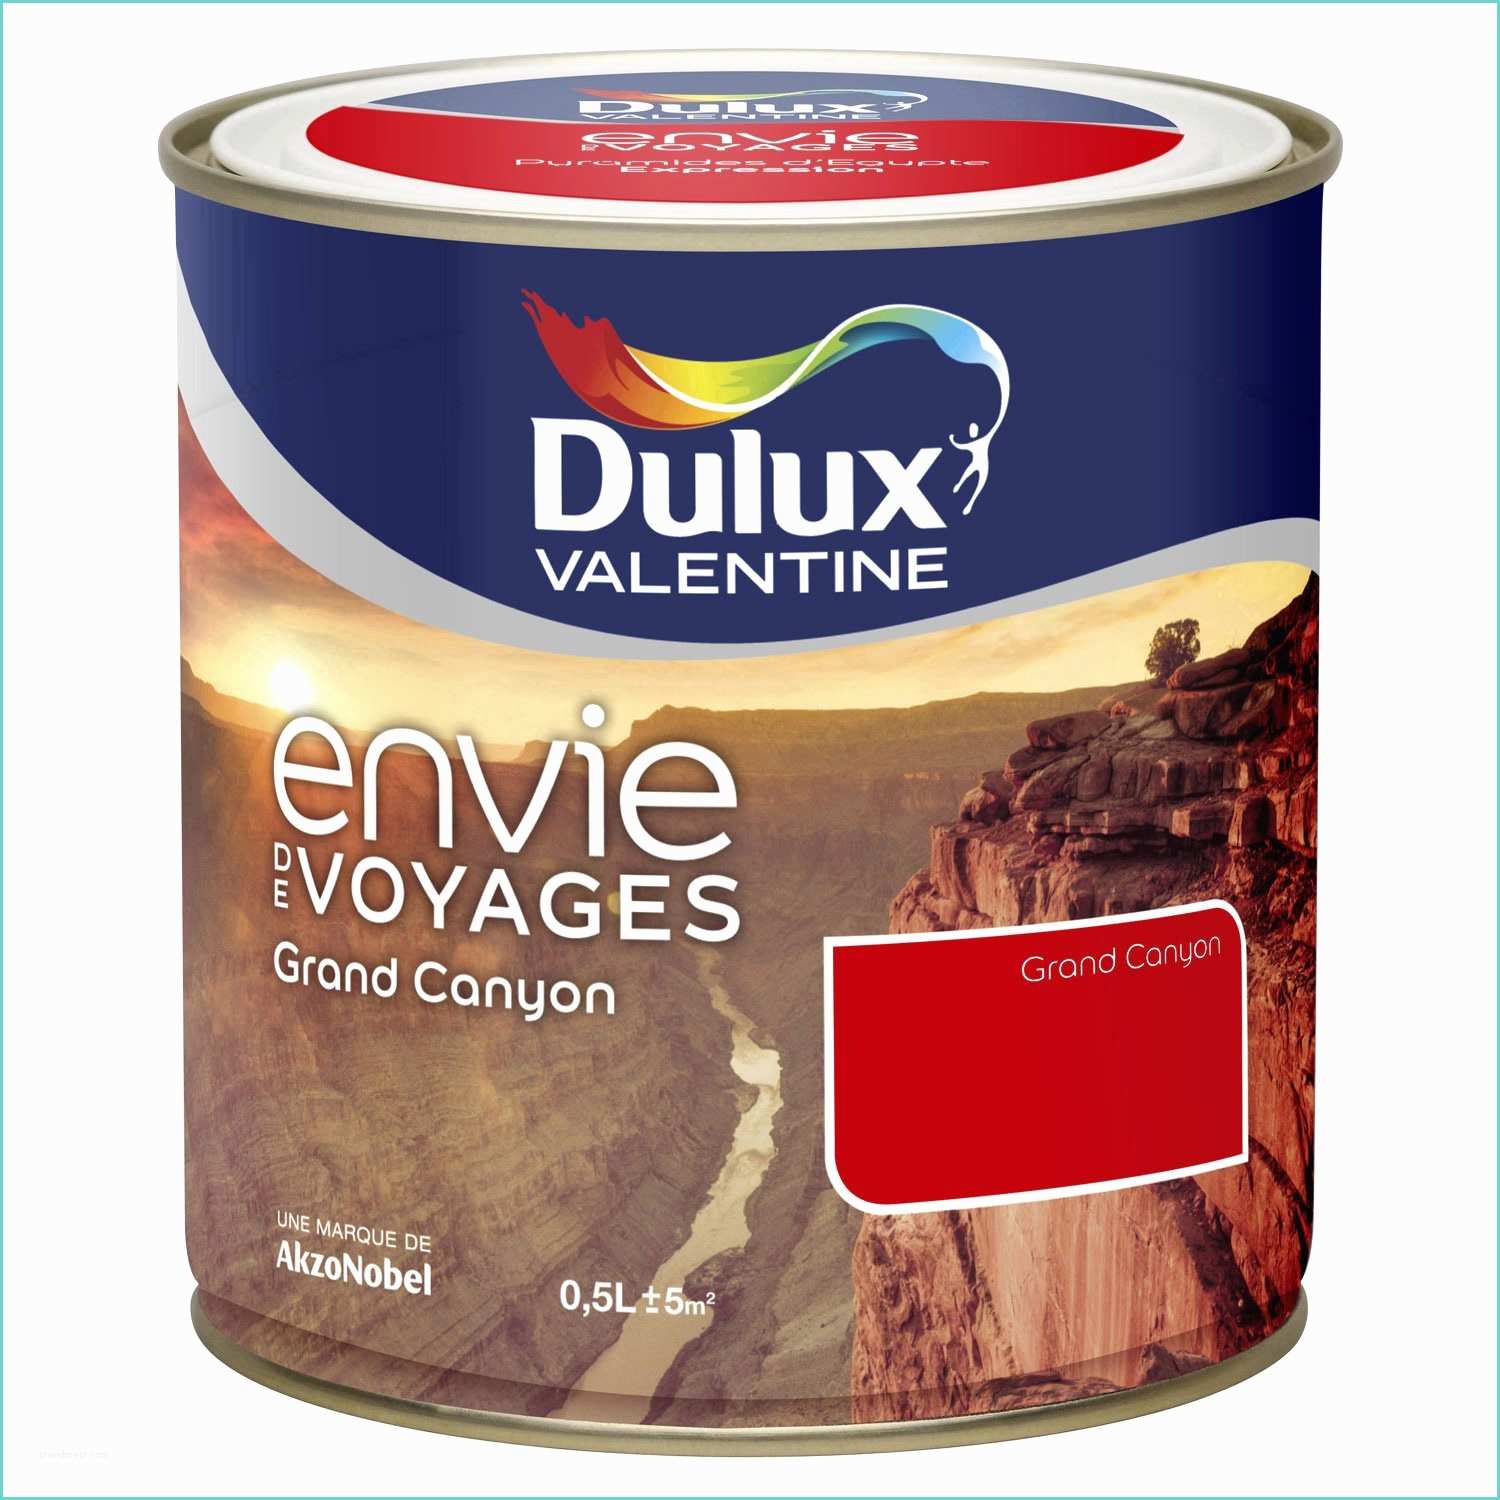 Leroy Merlin Dulux Peinture Envie De Voyage Dulux Valentine Grand Canyon